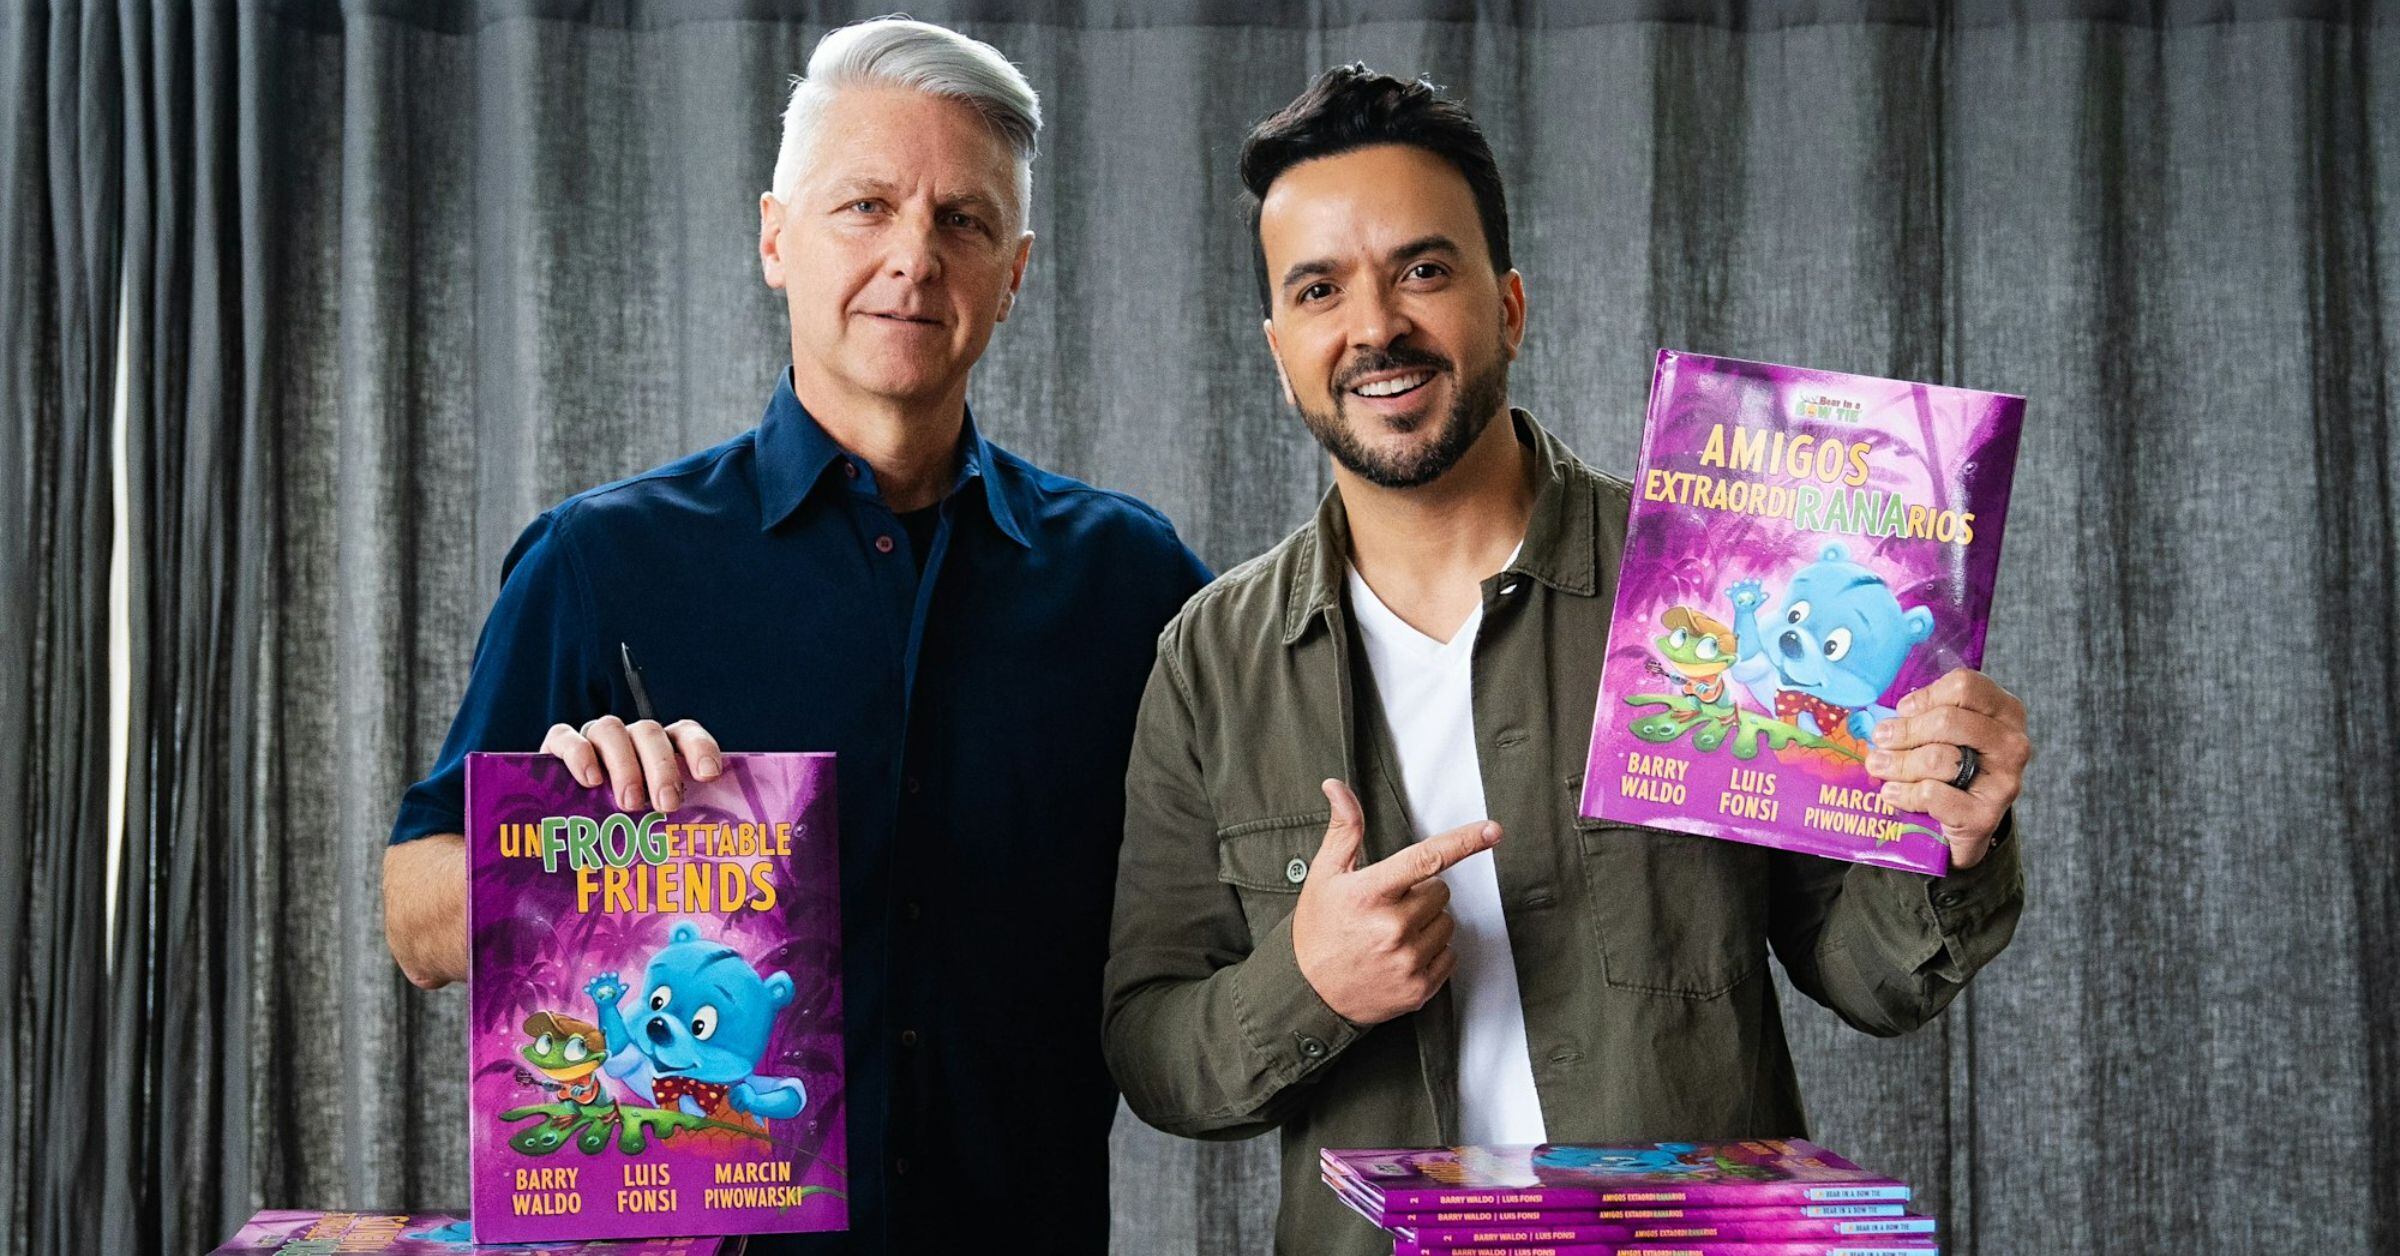 El cantante puertorriqueño Luis Fonsi (d) y el exejecutivo de Disney y Mattel Barry Waldo (i)  posan con unos ejemplares del libro. 